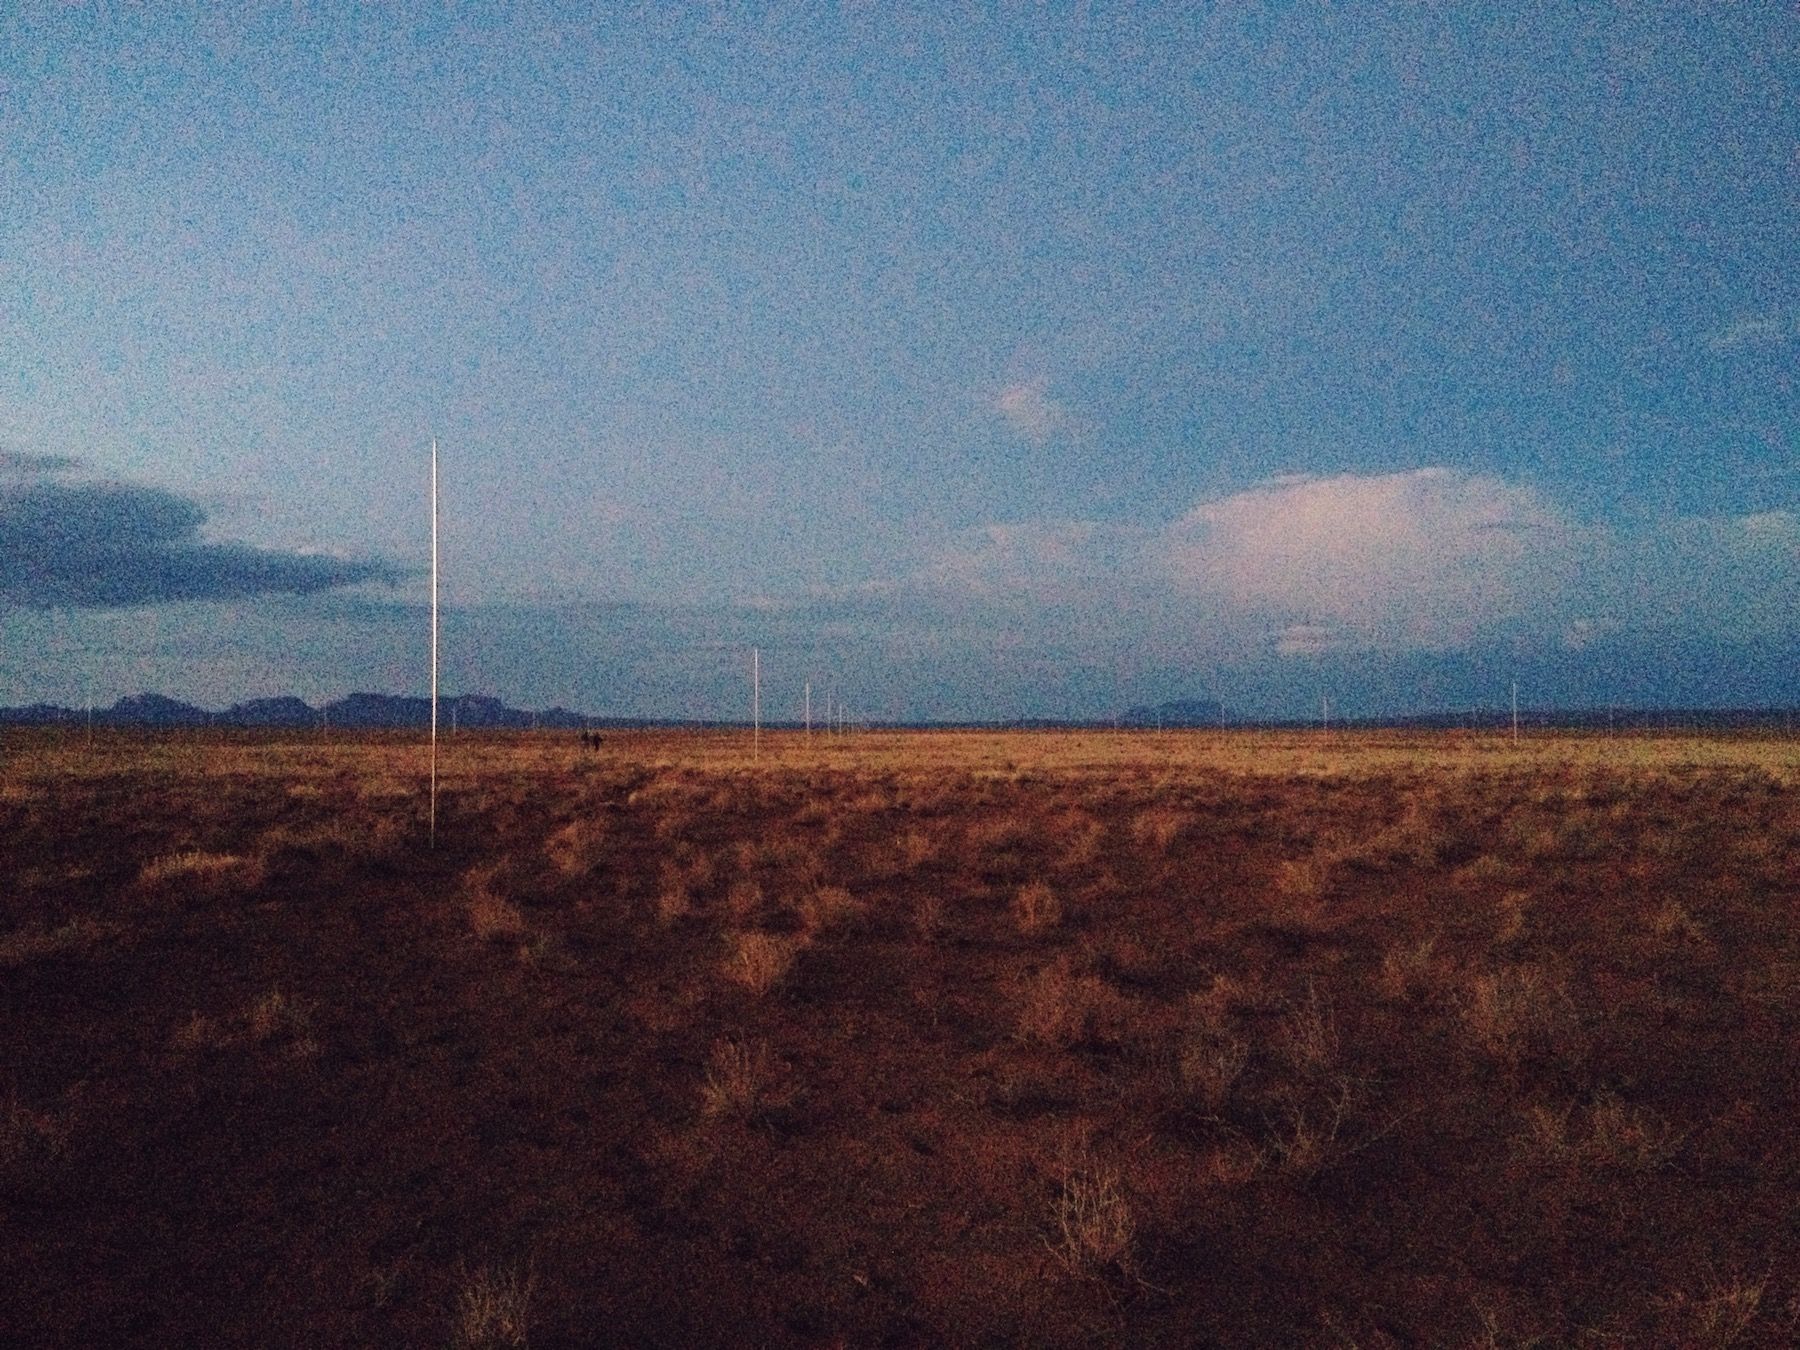 Walter de Maria's Lightning Fields at dusk.